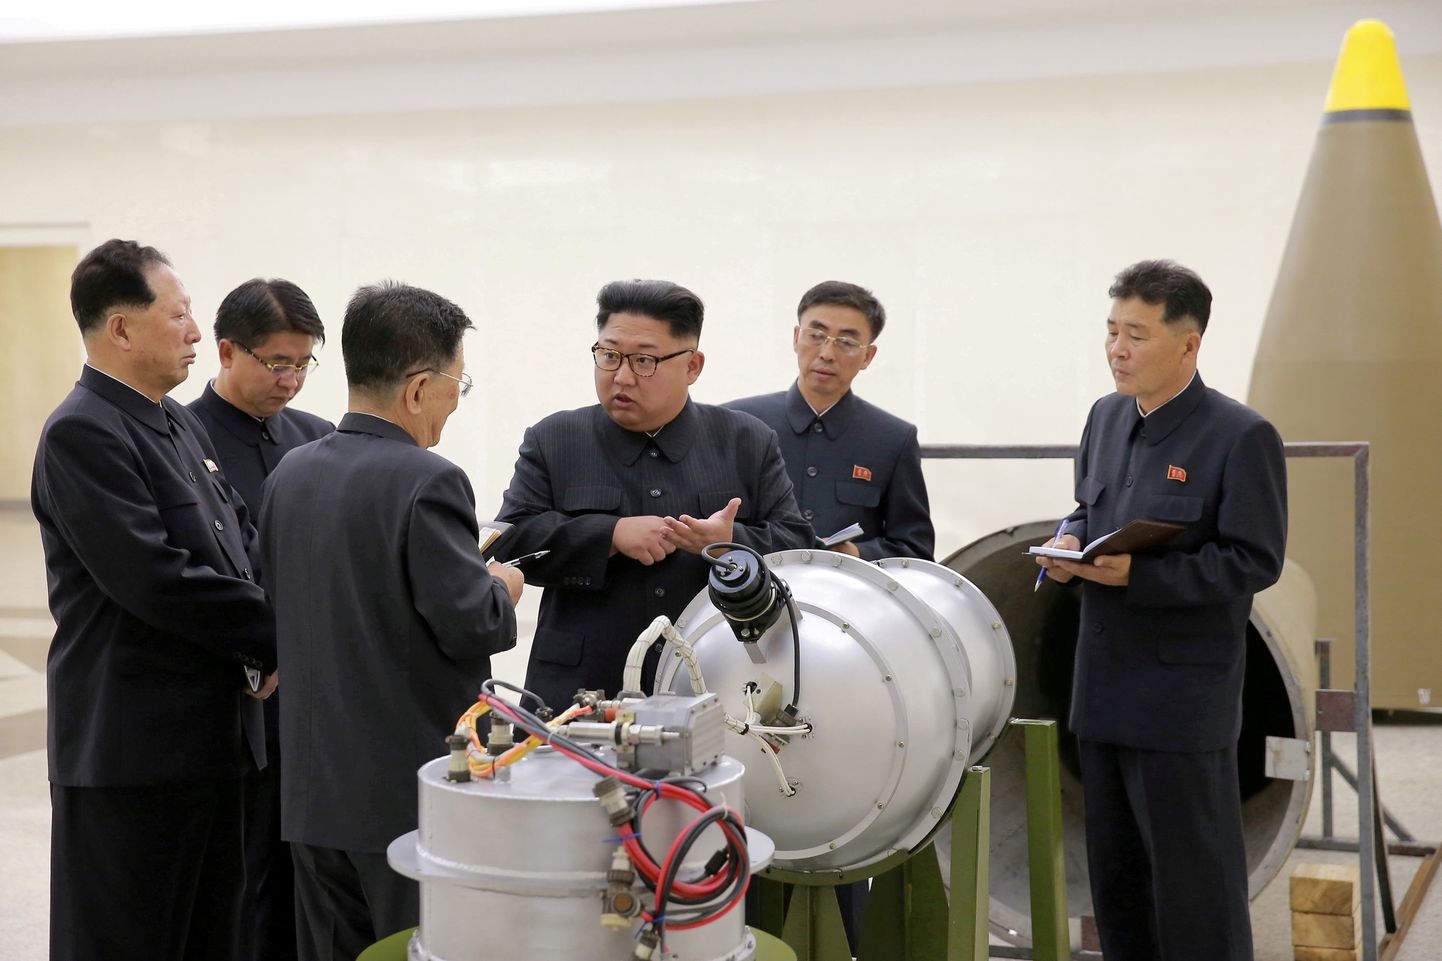 Kim Jong-un eelmise aasta septembris oma teadlasi tuumaprogrammi osas juhendamas.